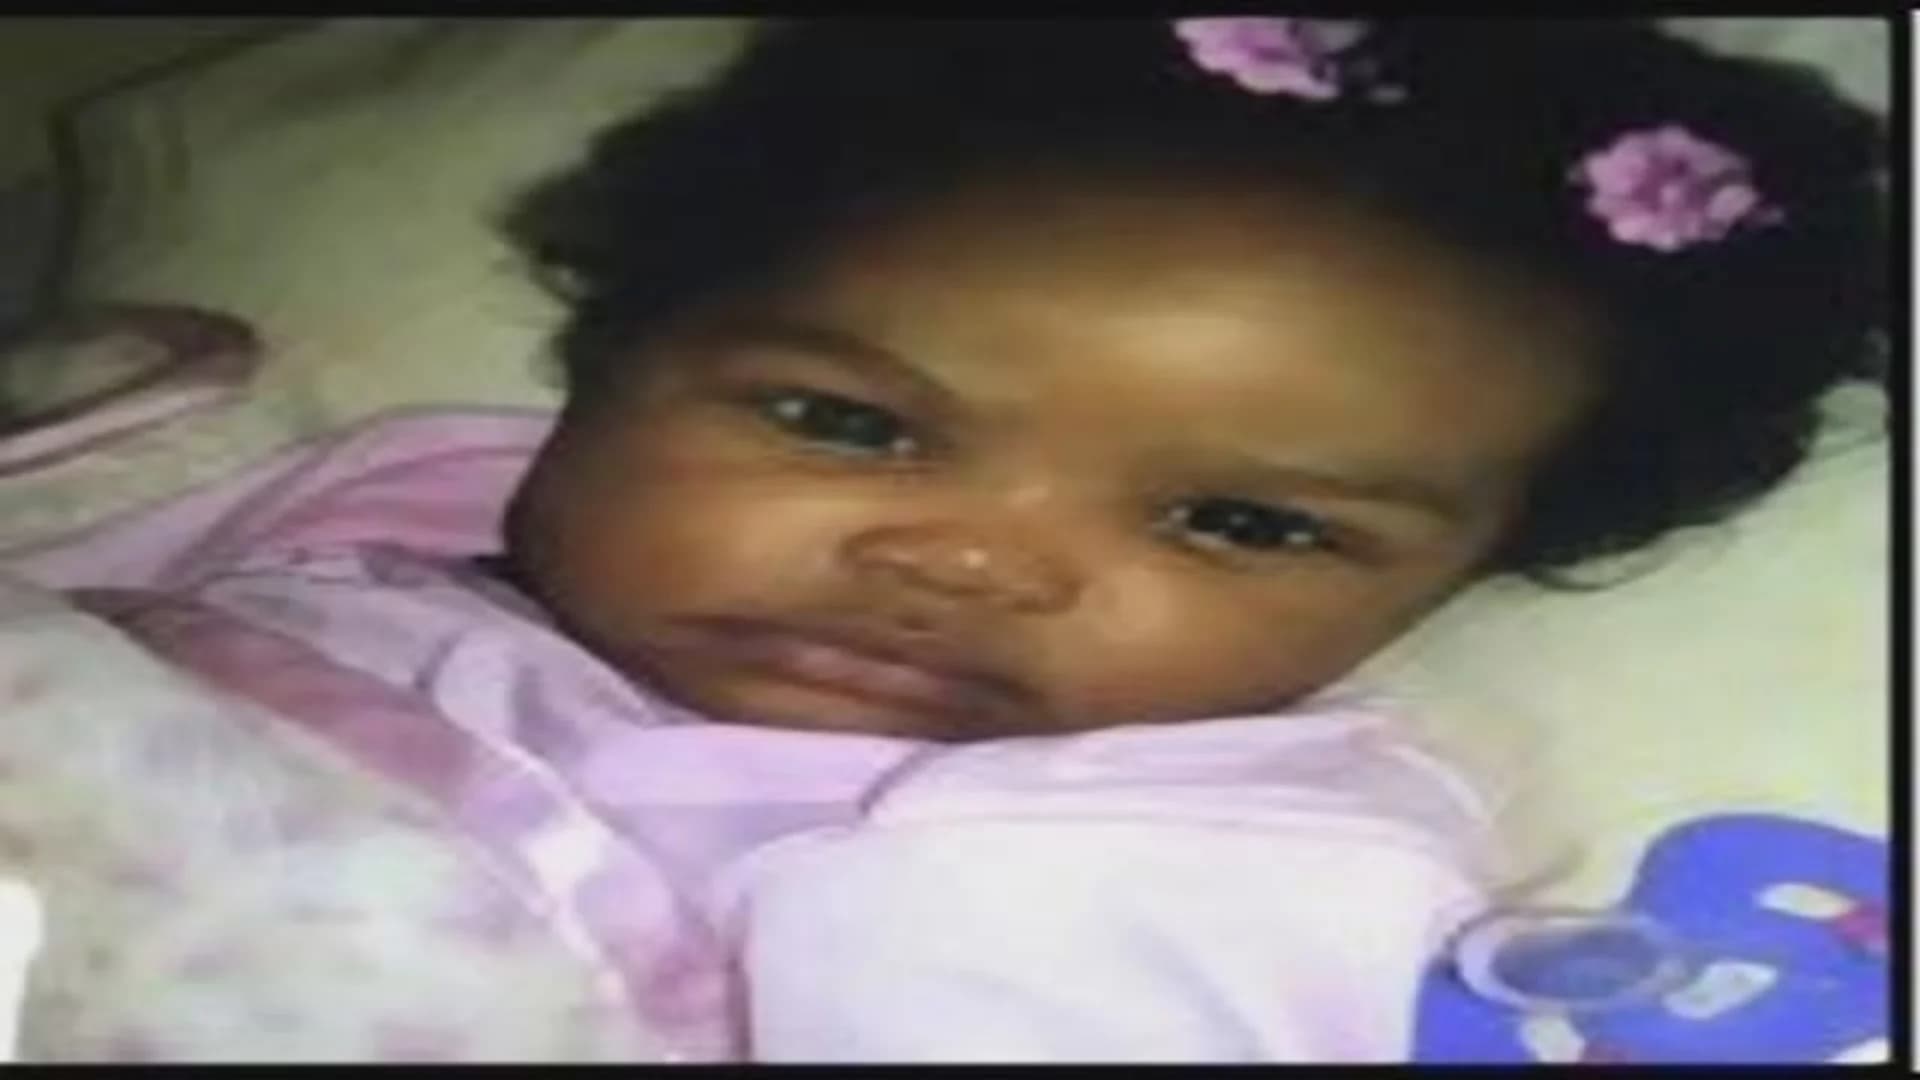 Amber alert canceled after 8-month-old is found safe